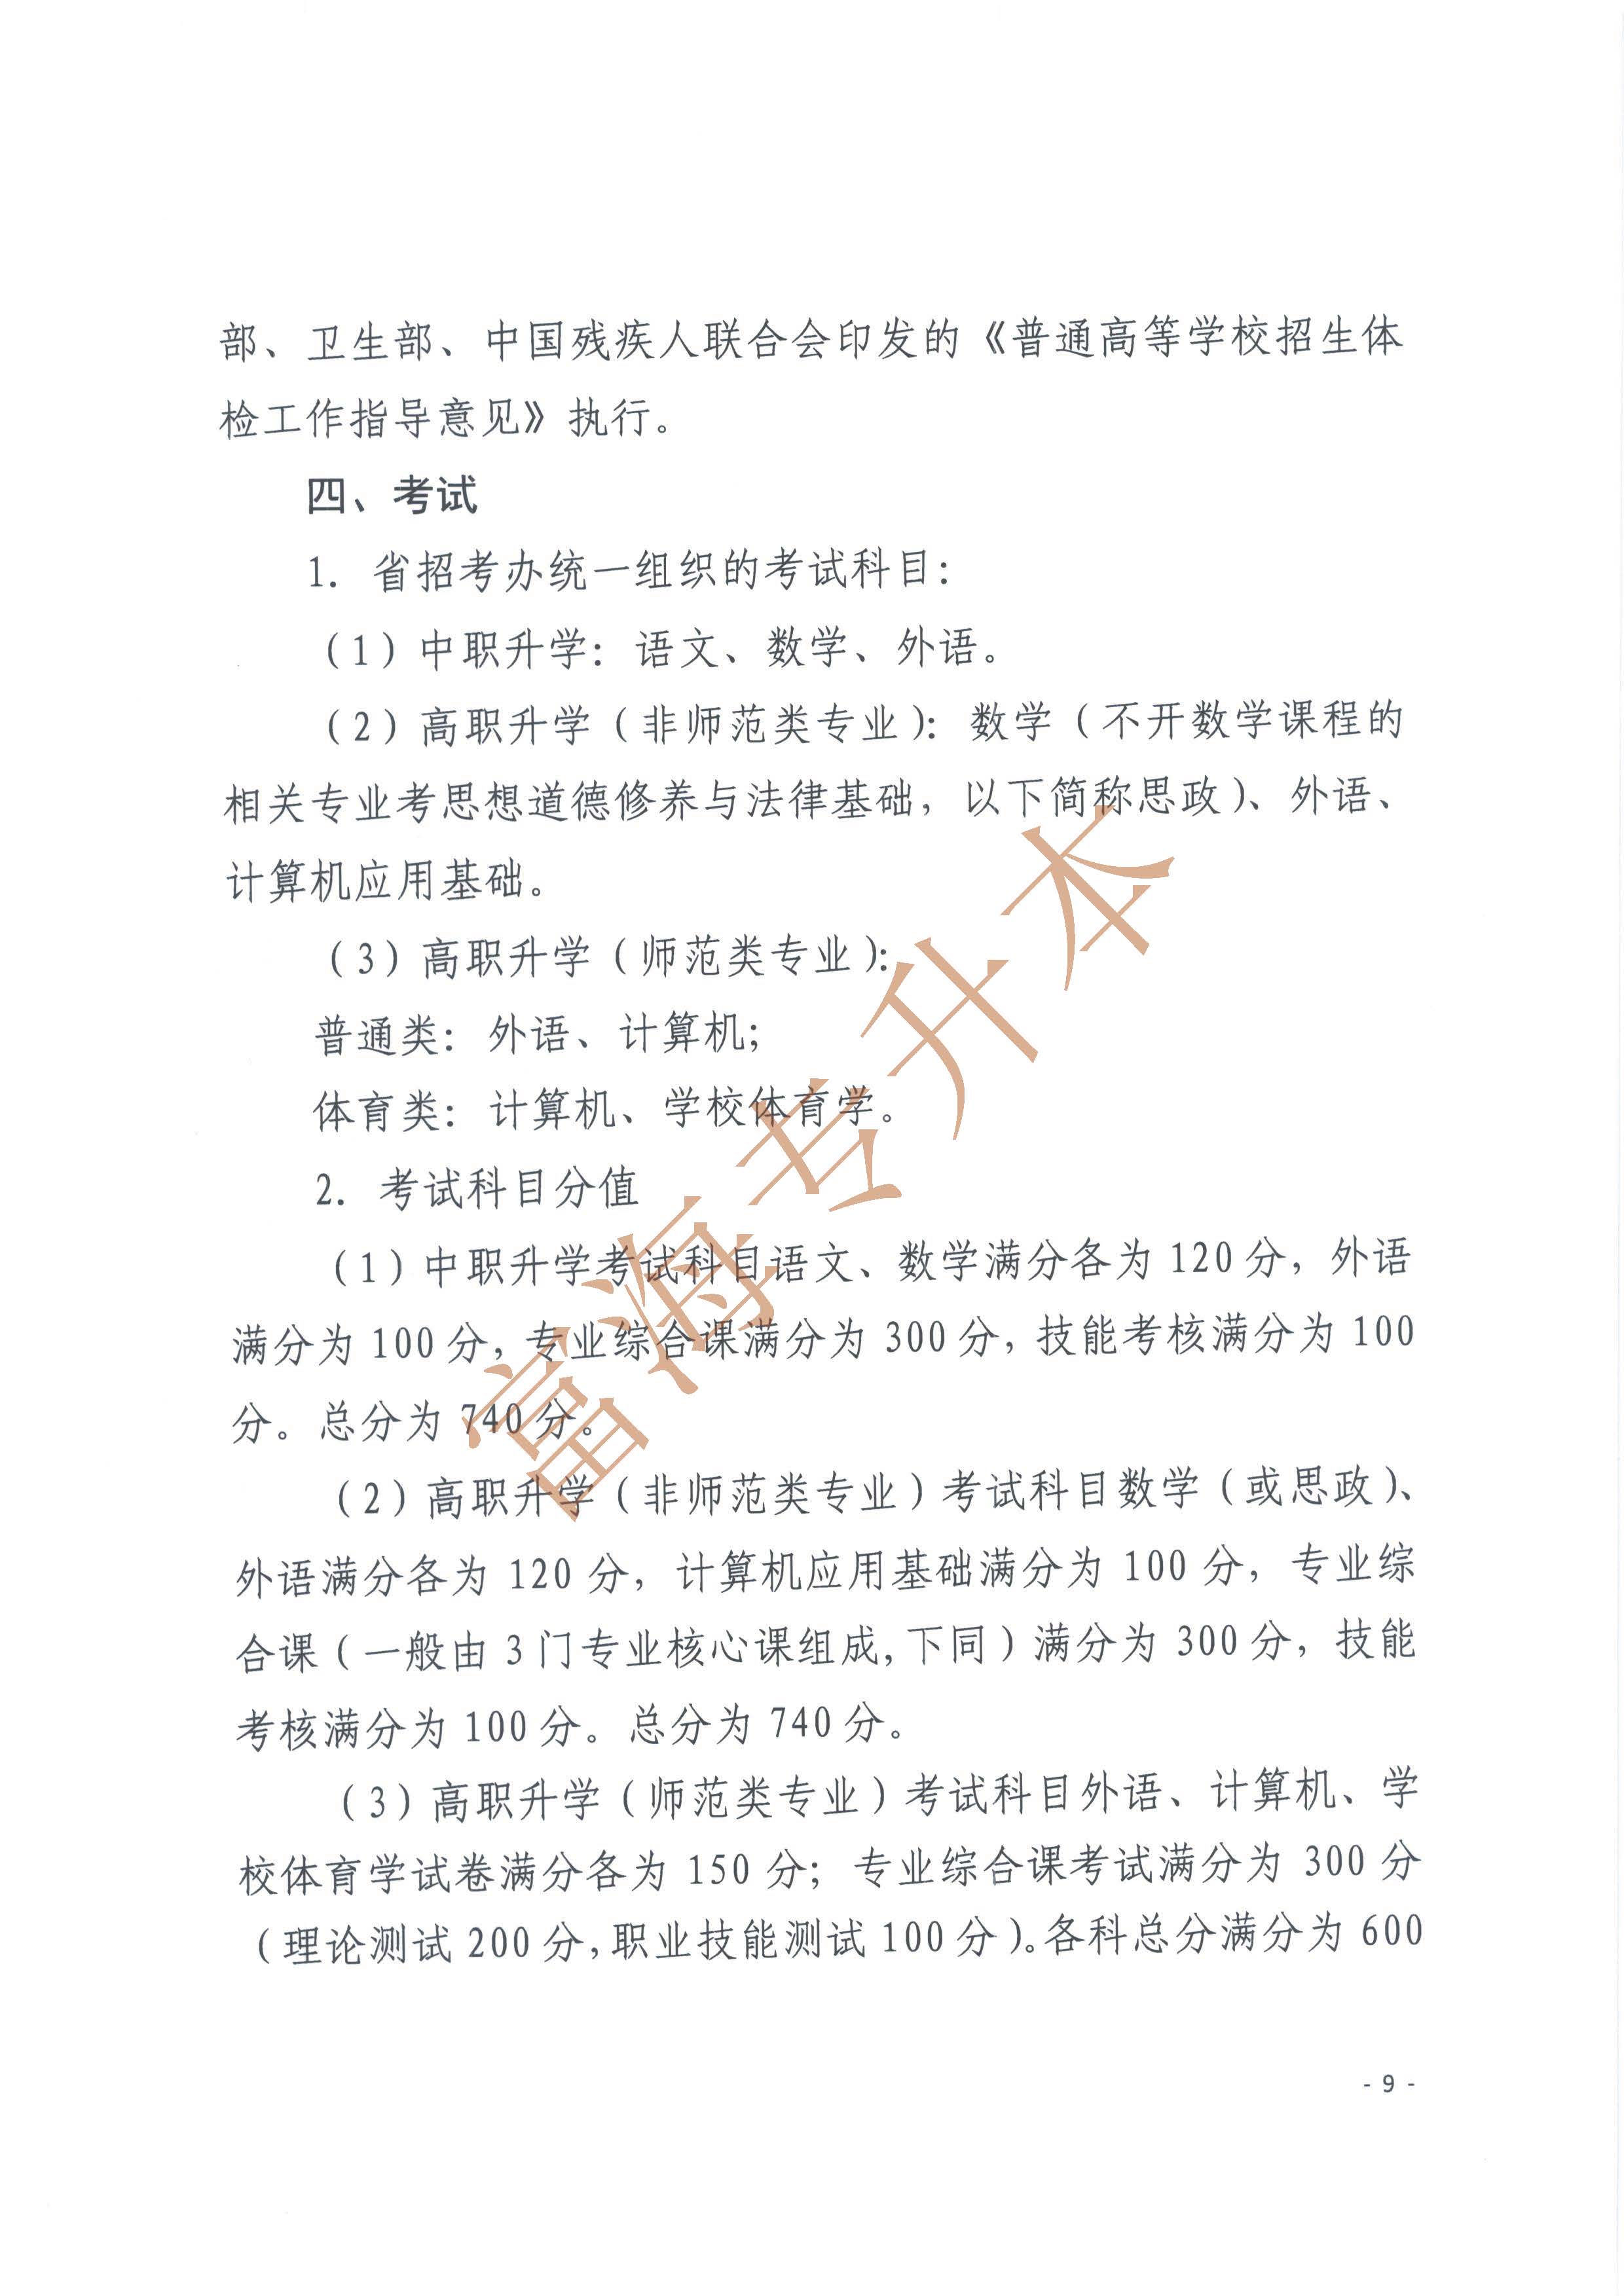 辽宁省2017年职业教育对口升学考试招生工作实施办法的通知9